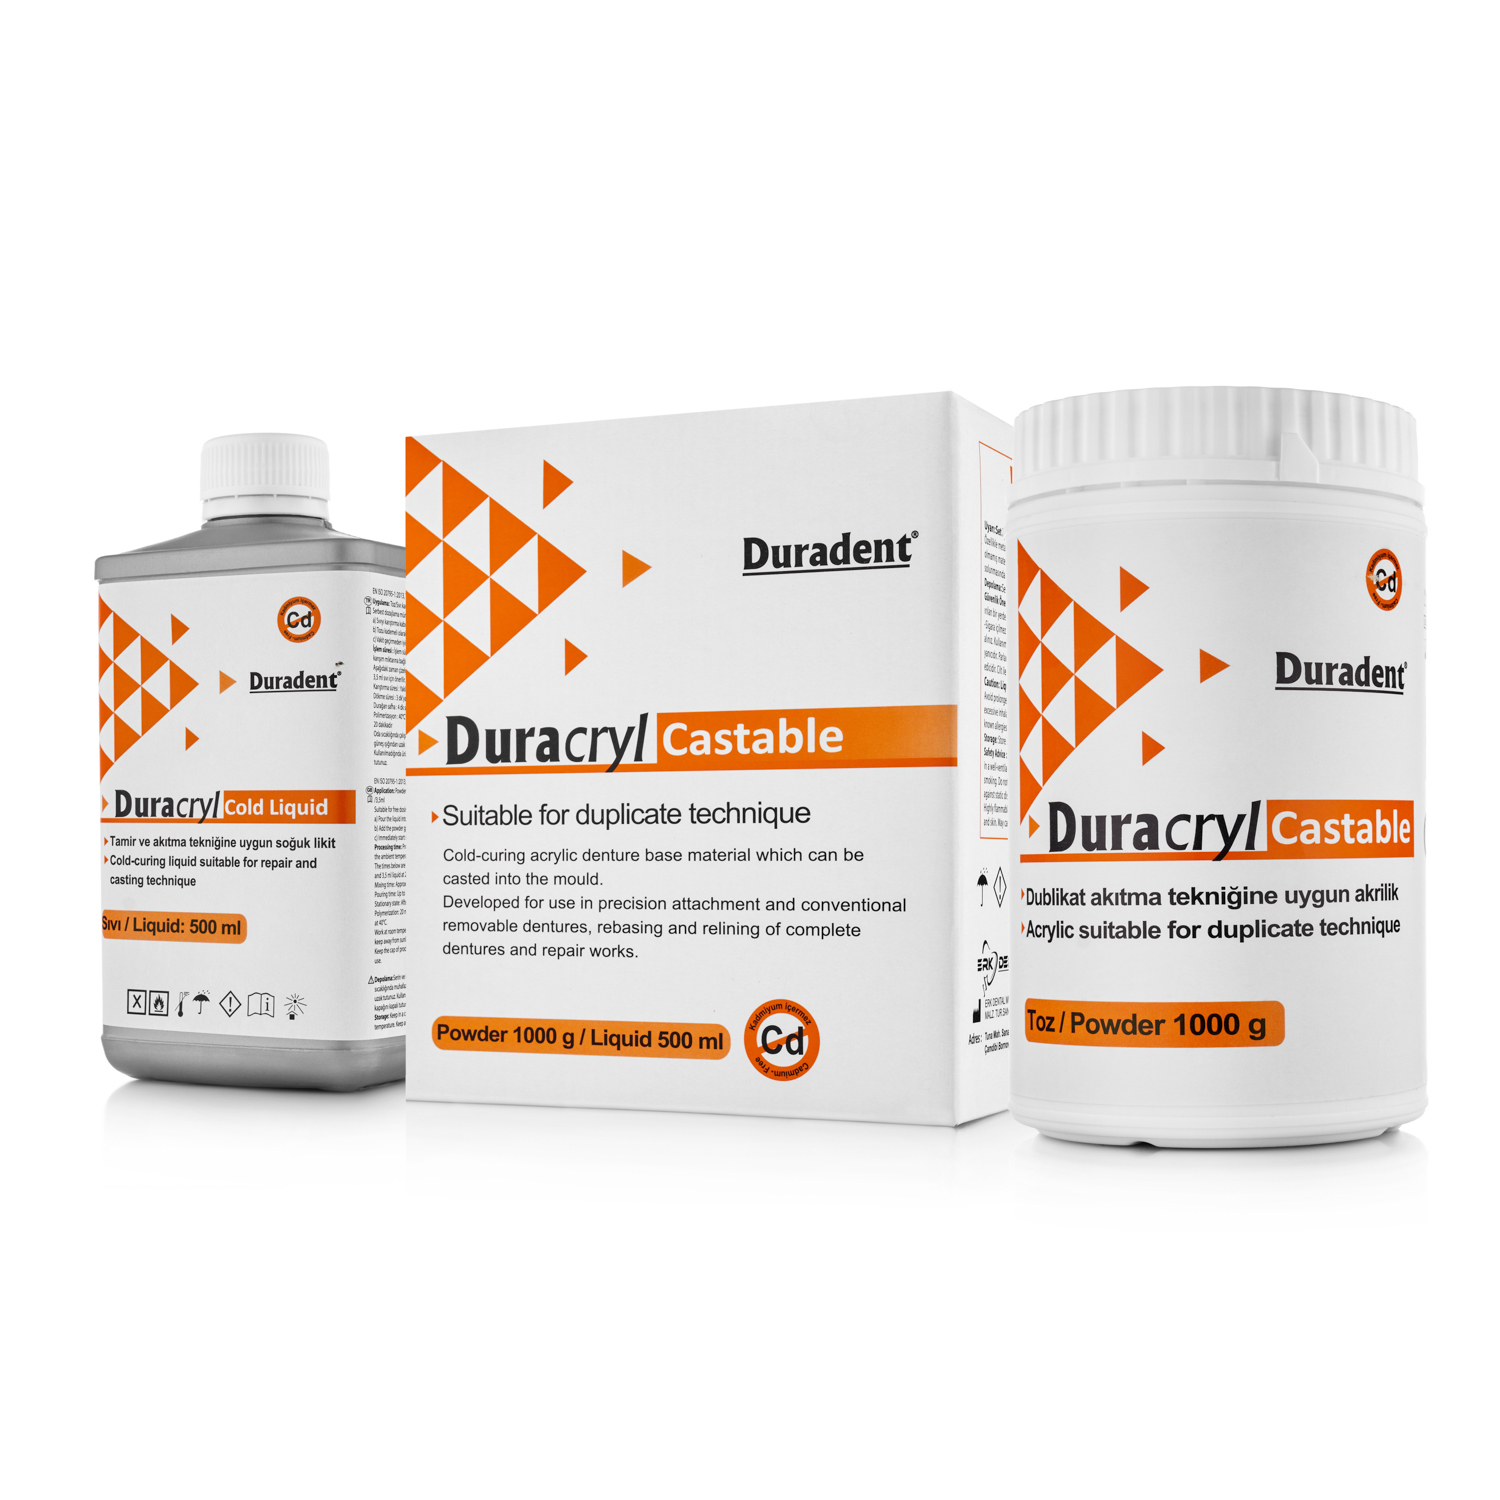 Пластмасса холодной полимеризации Duradent Duracryl Castable